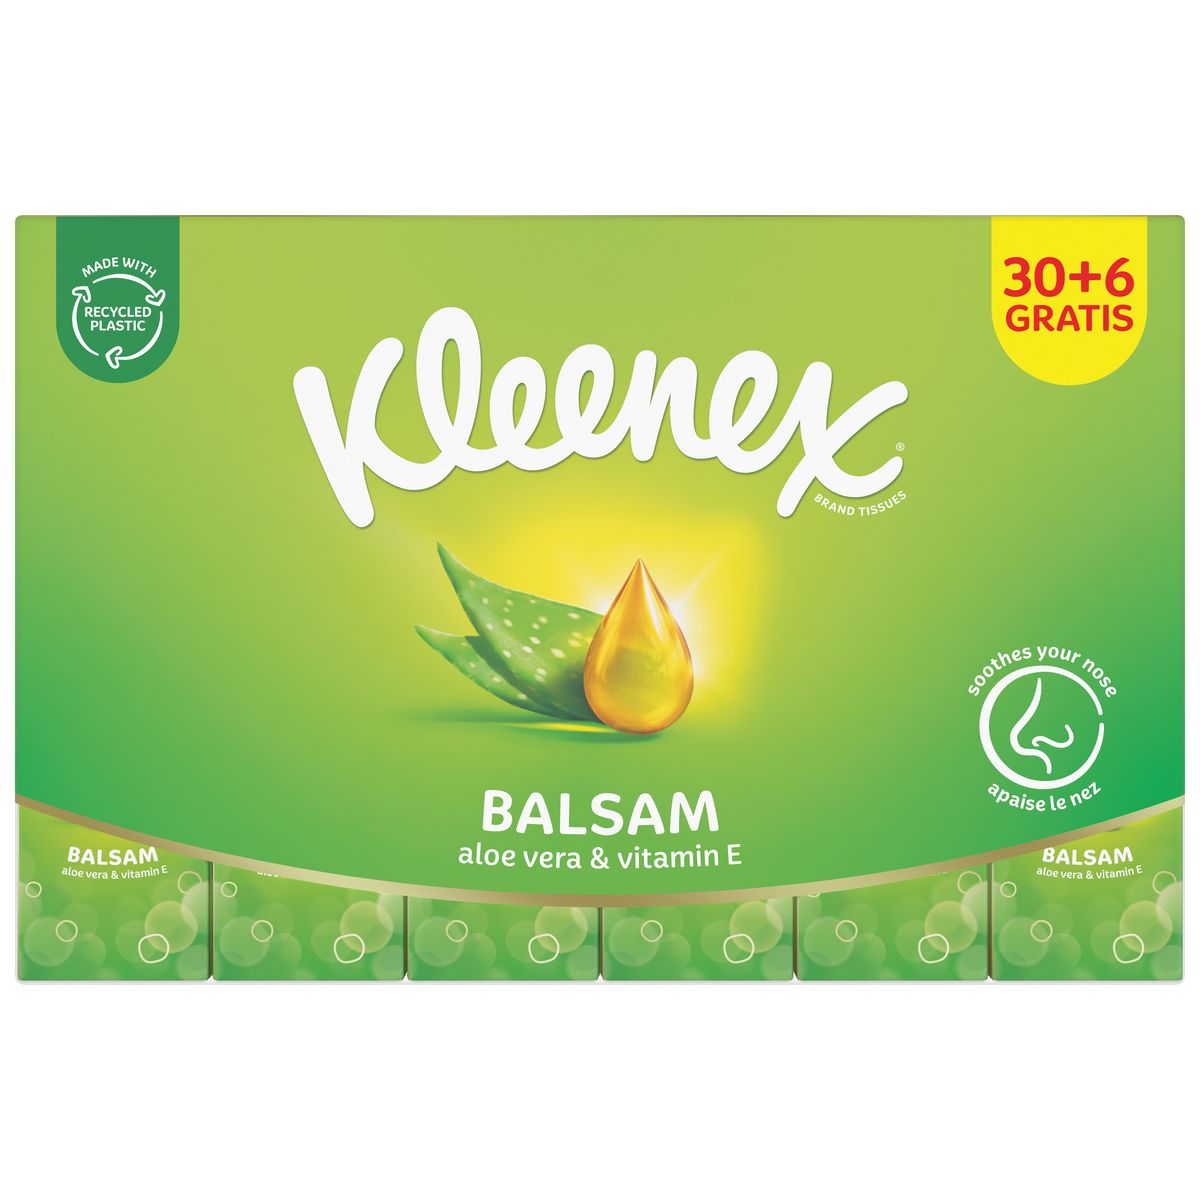 KLEENEX Paquet de mouchoirs blanc balsam 30+6 offerts